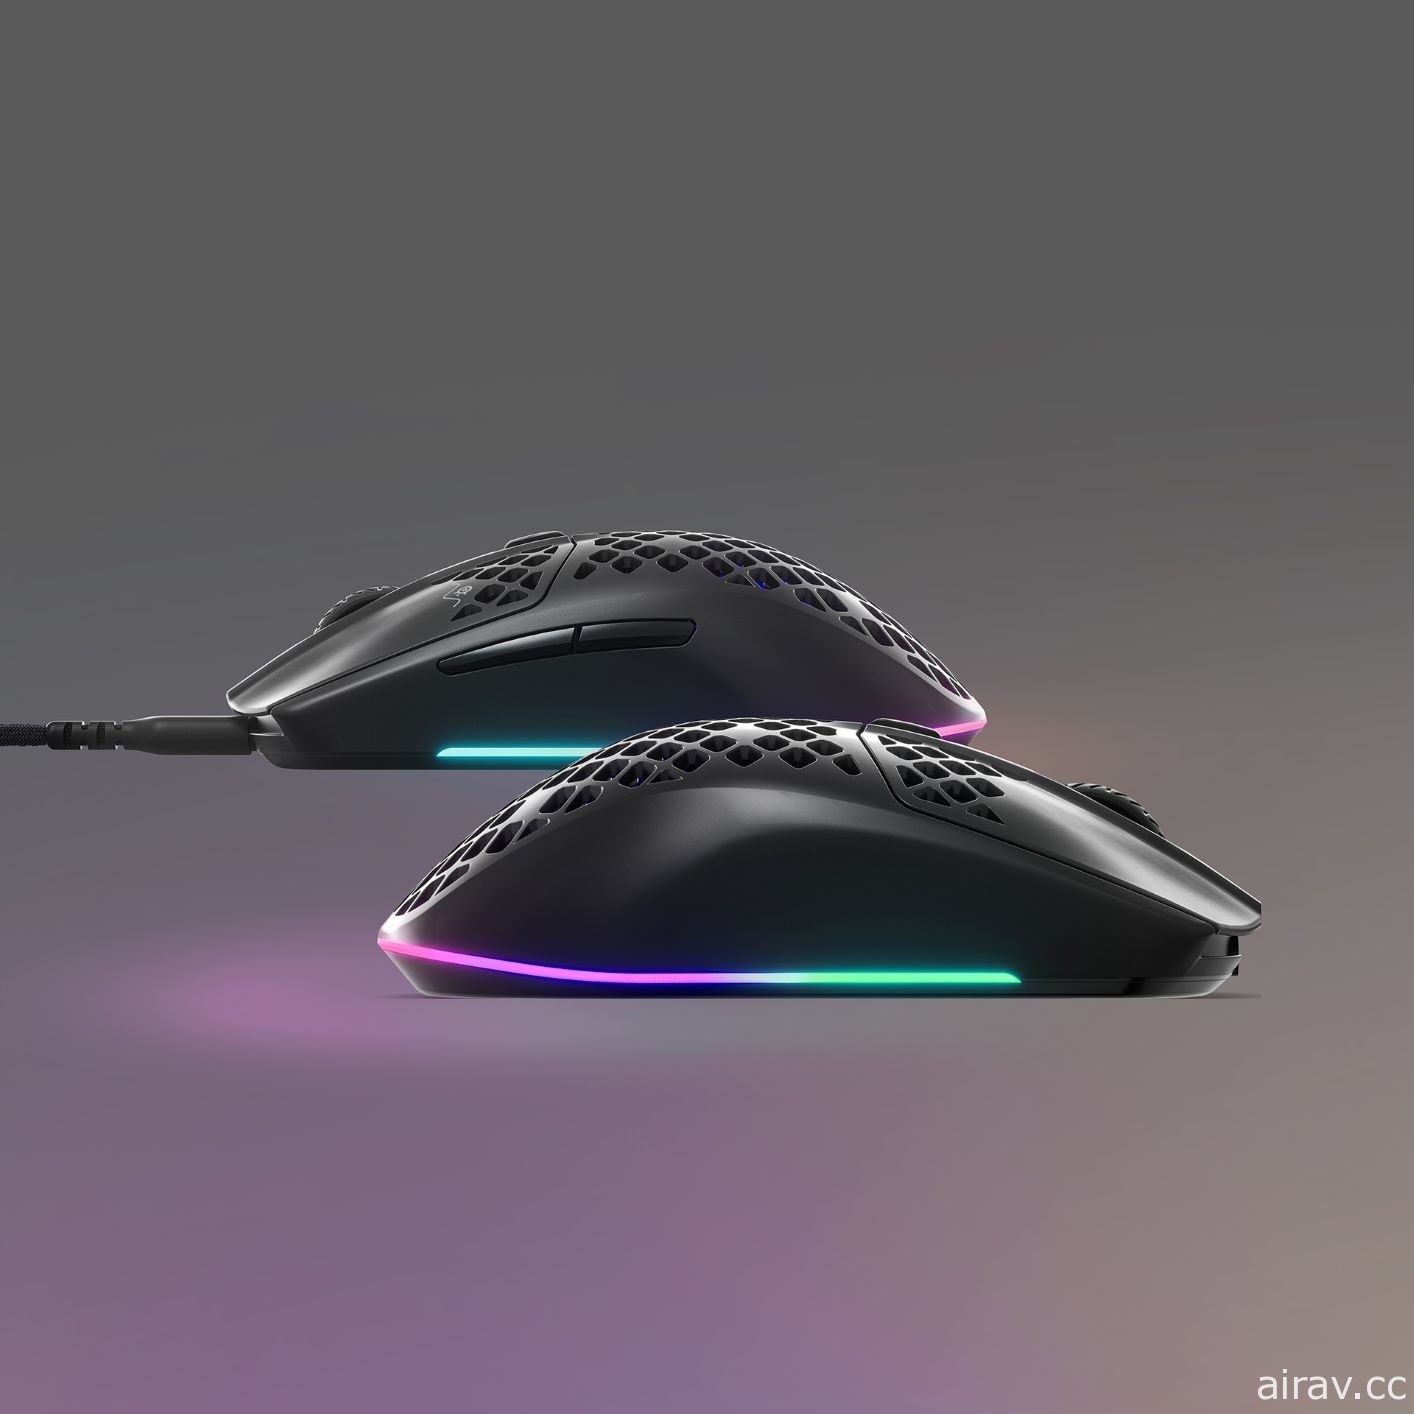 賽睿 SteelSeries 推出新款超輕量型 Aerox3 遊戲滑鼠